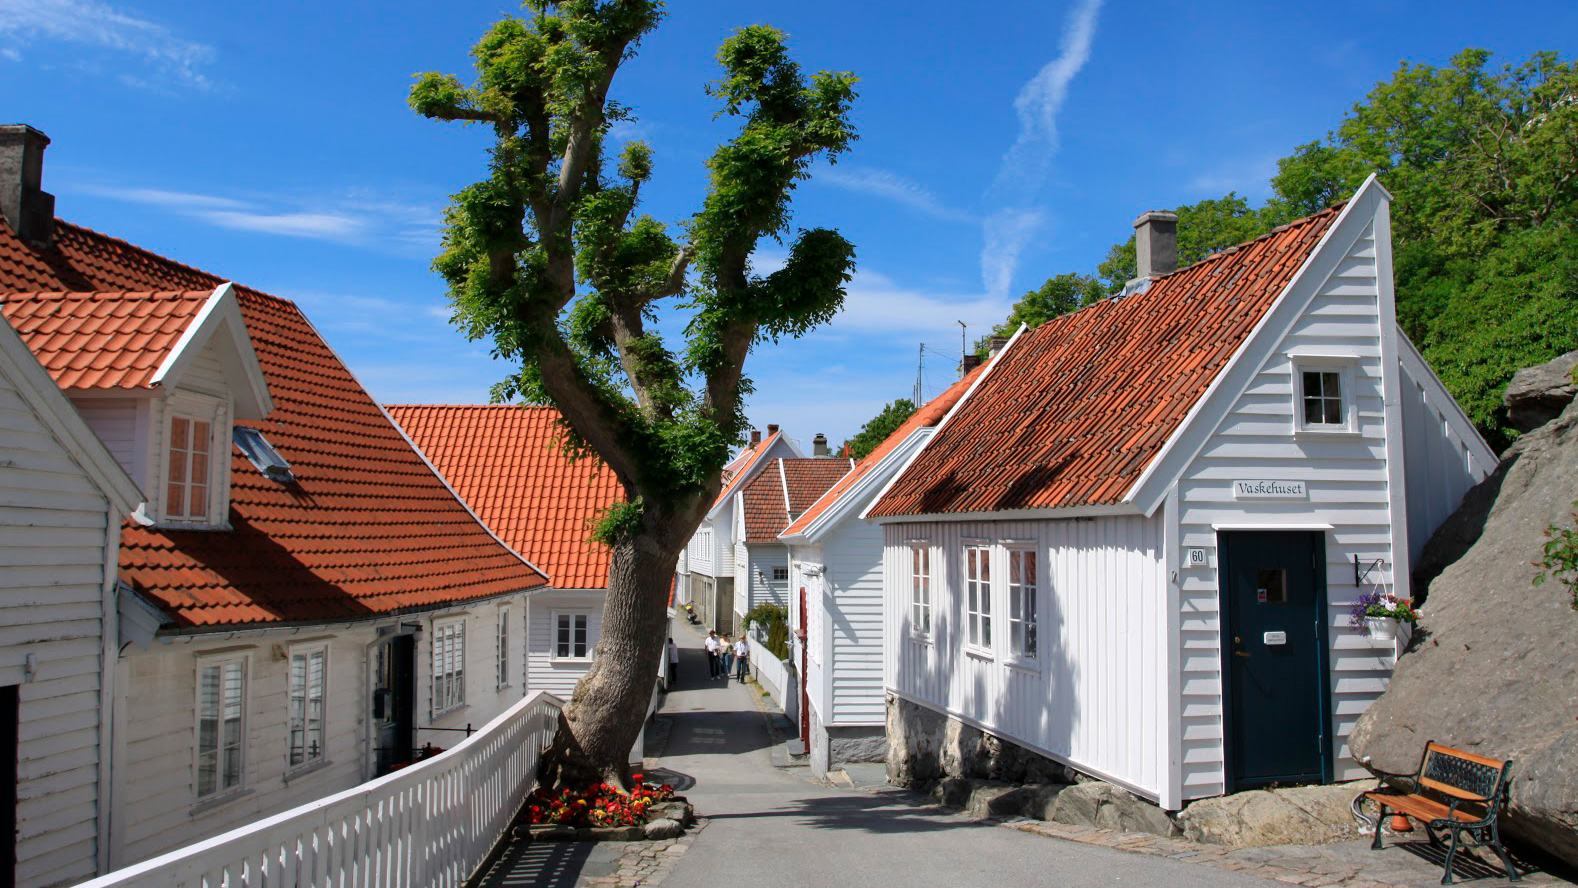 Bilde av en gate i skudeneshavn. Foto er tatt av Ørjan B. Iversen, Riksantikvaren